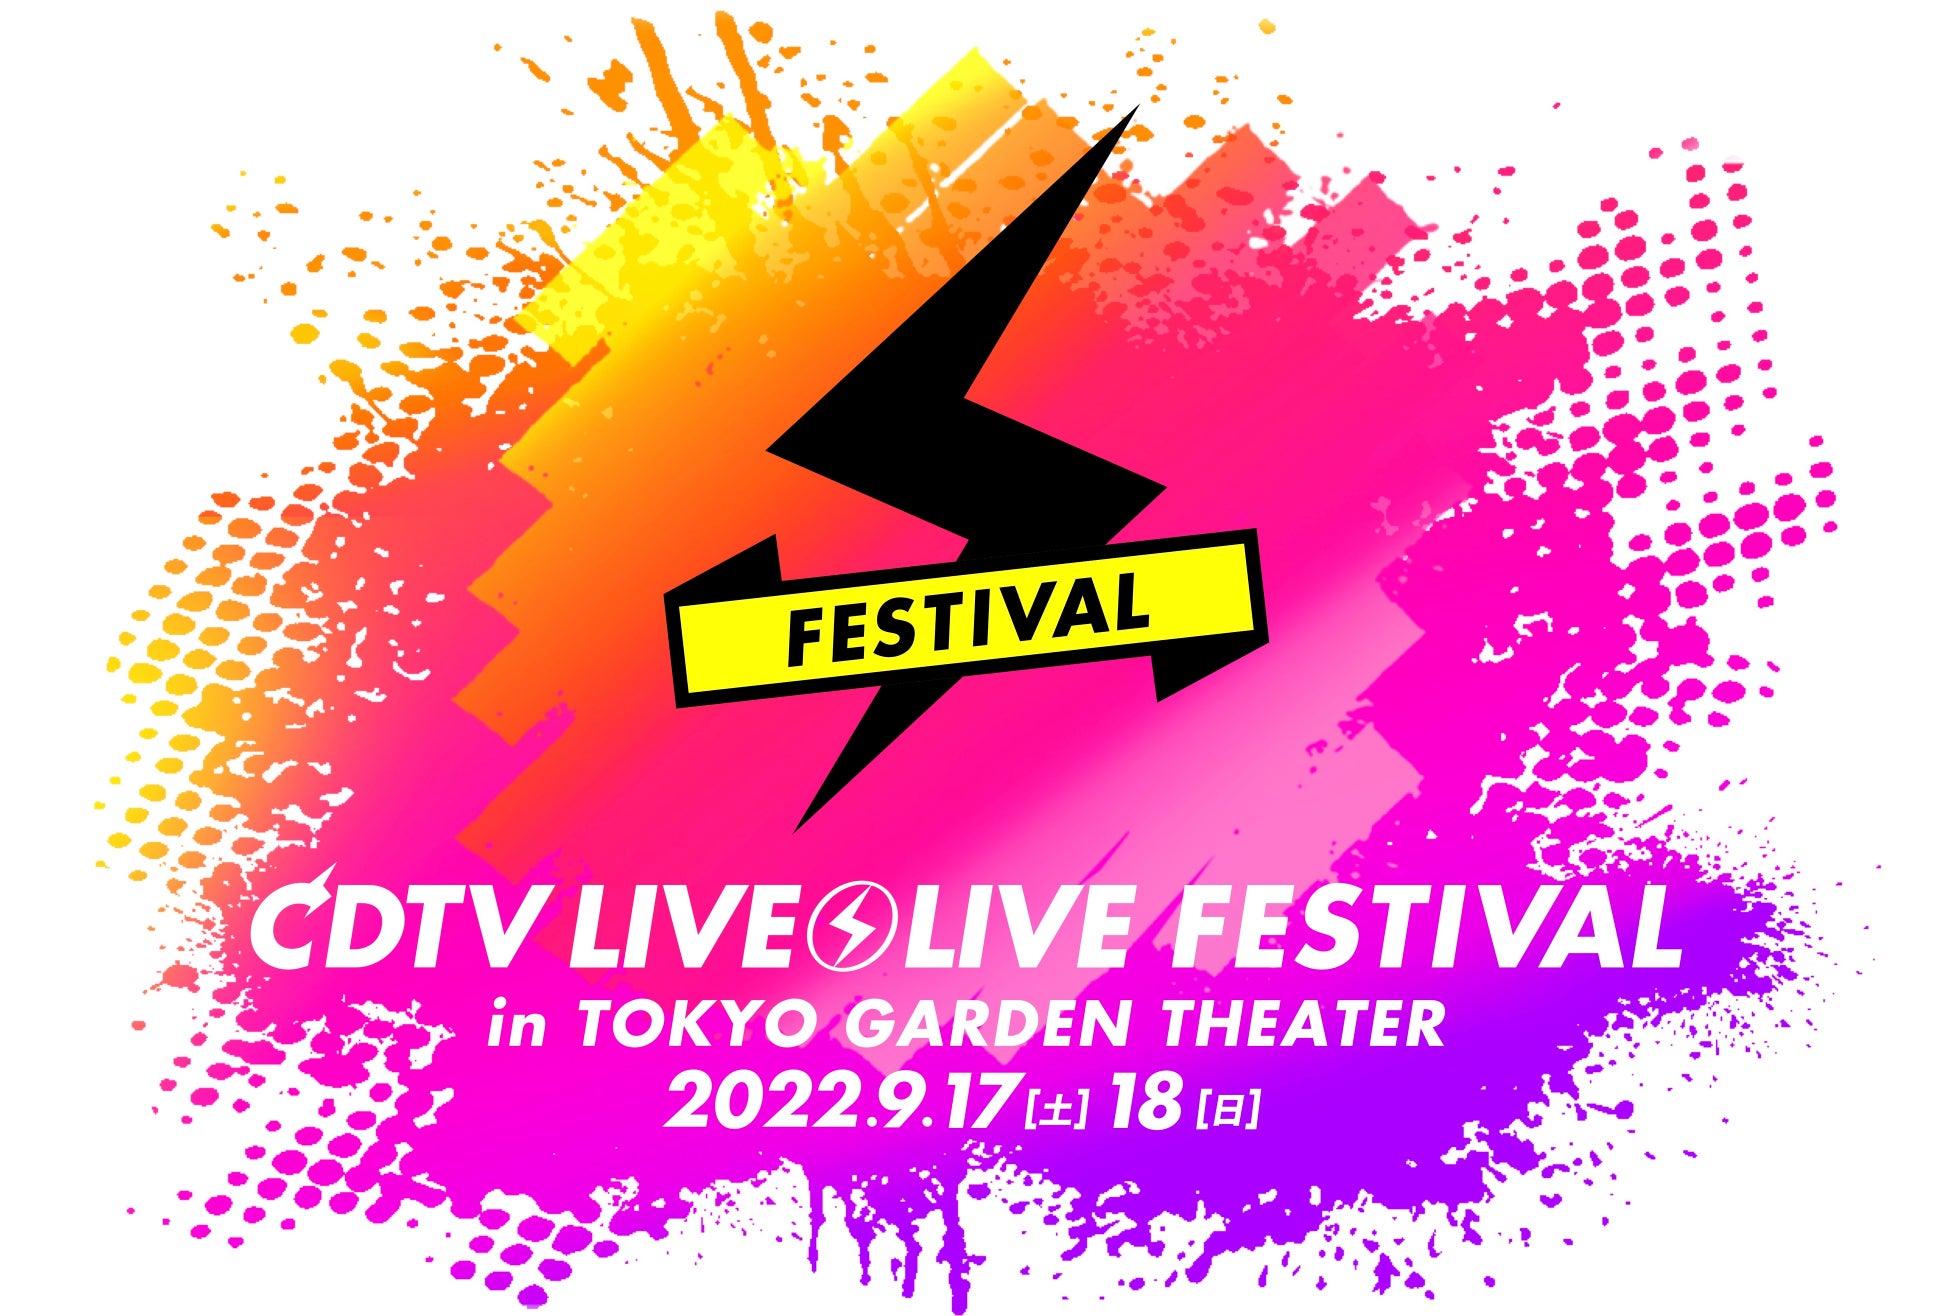 TBSが誇る人気音楽番組『CDTVライブ!ライブ!フェスティバル!2022』9月17日(土)・18日(日)ParaviでLIVE配信決定